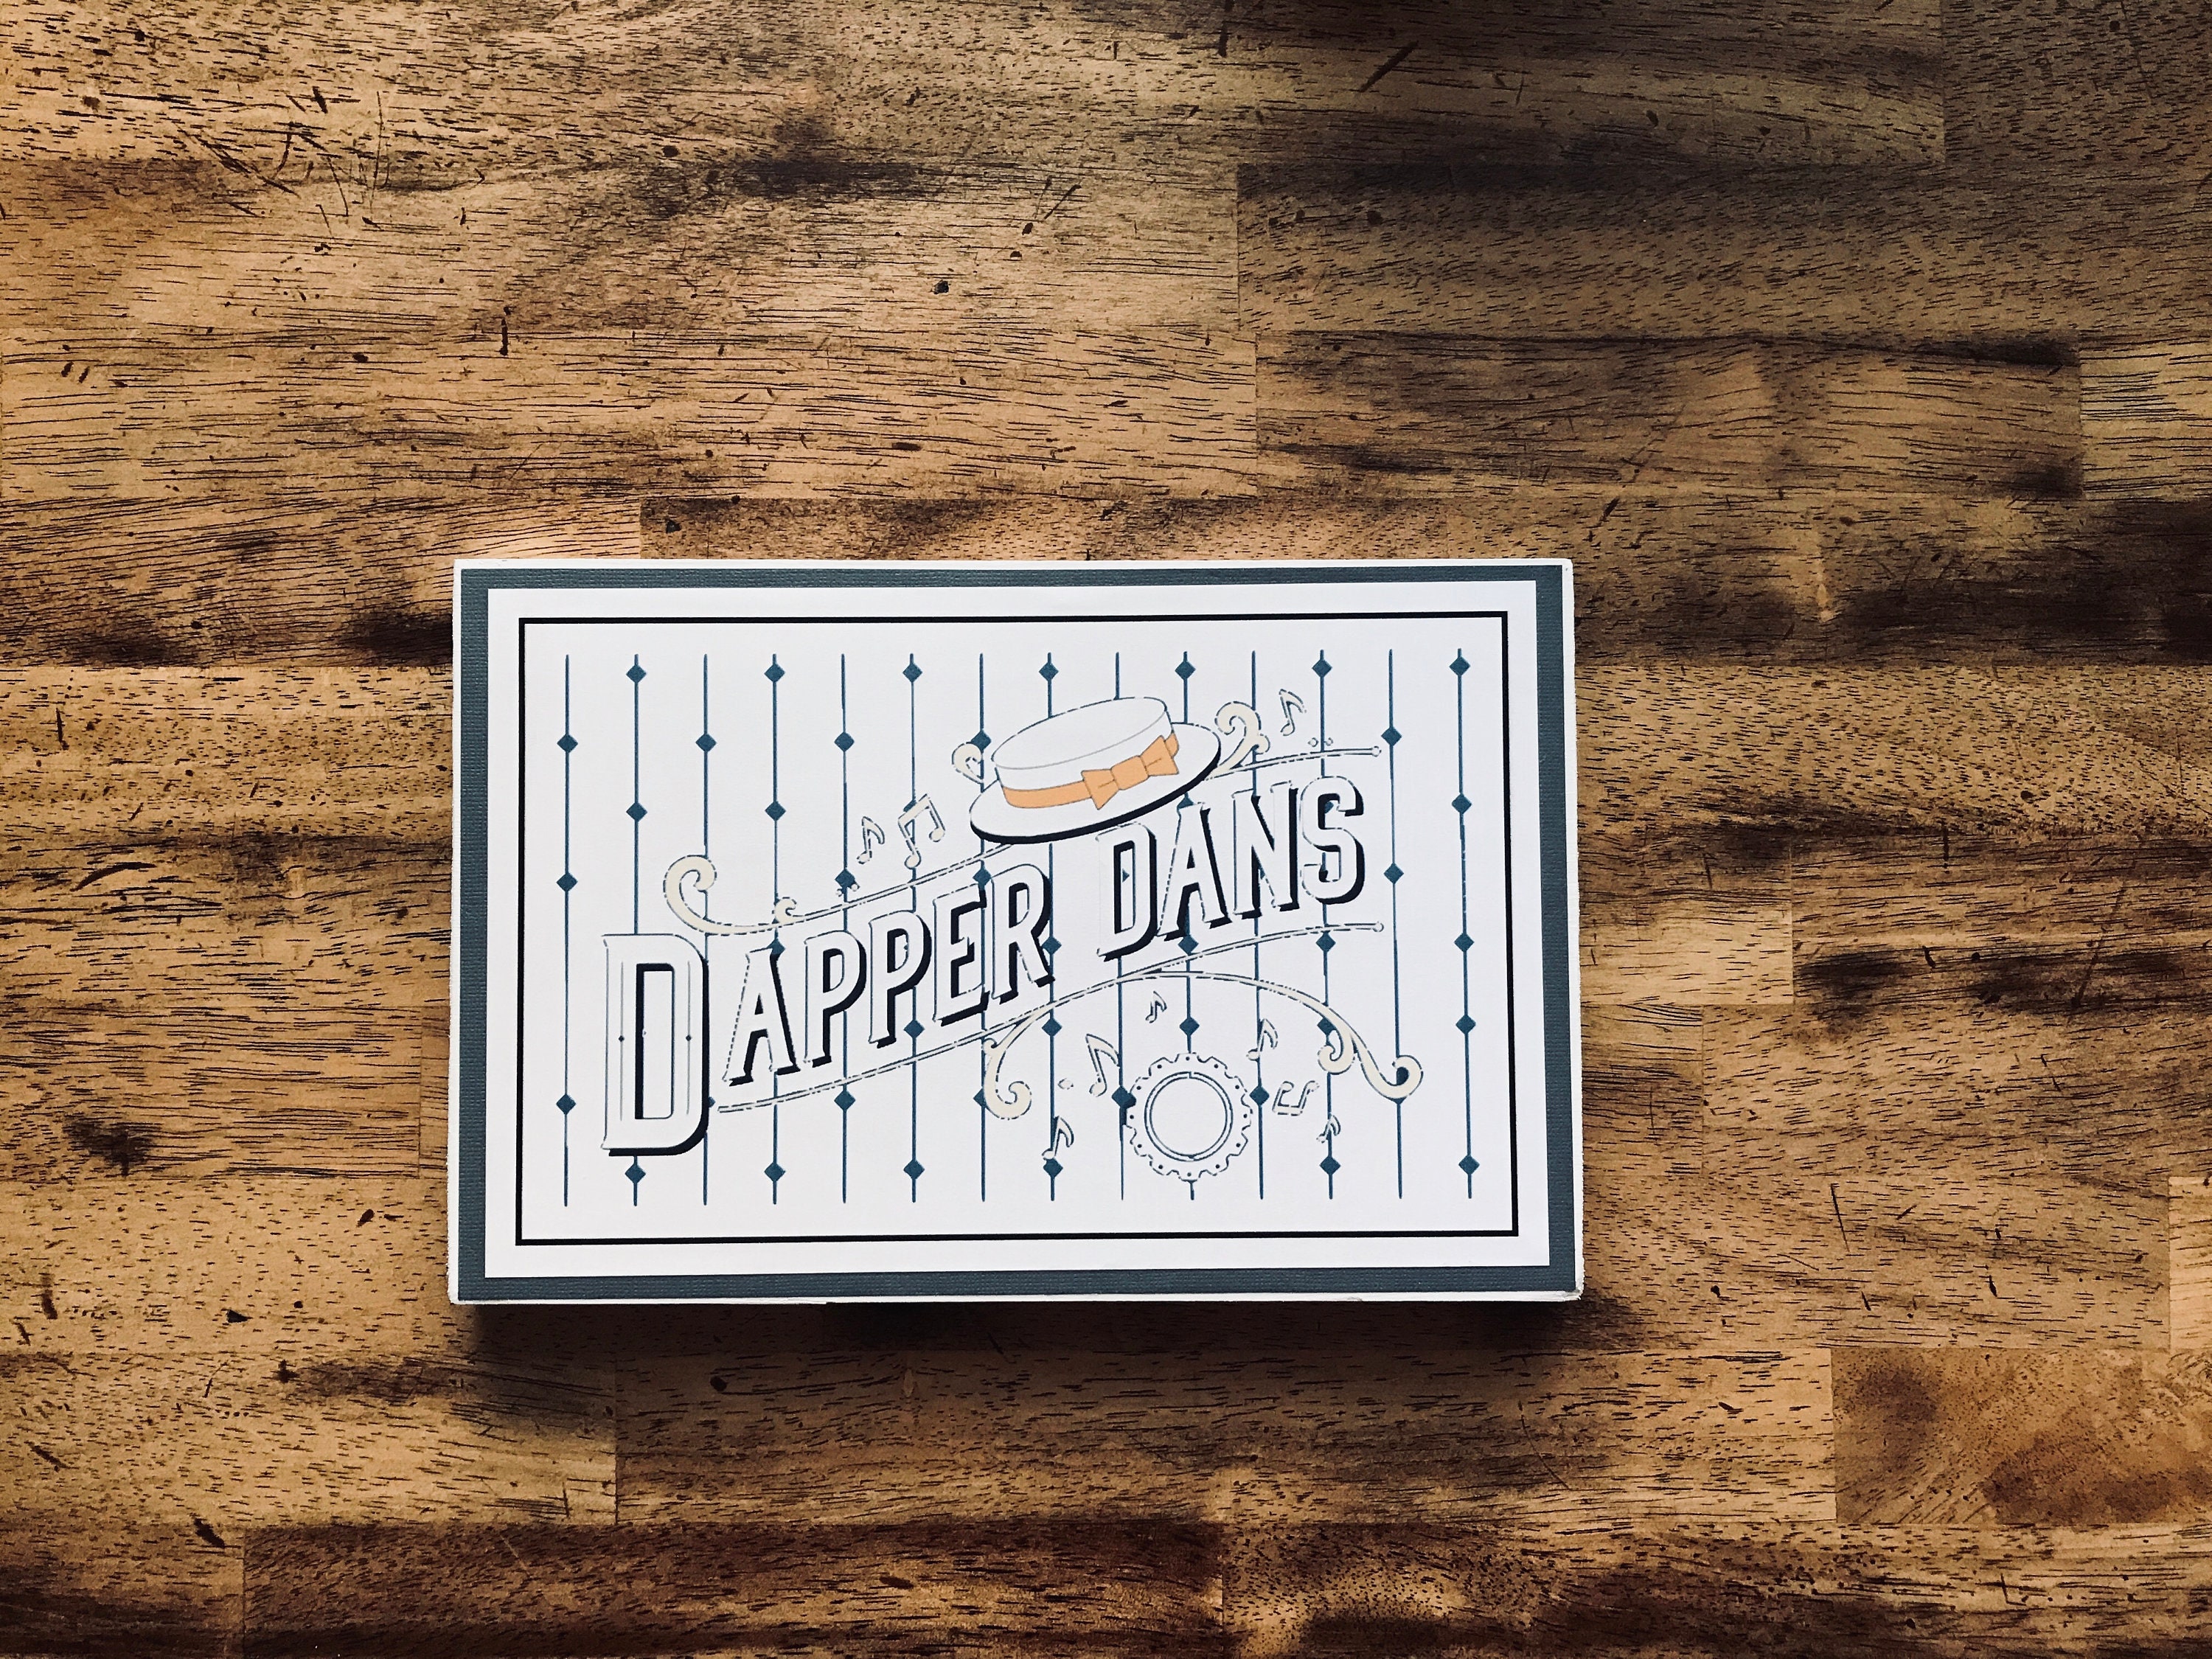 Dapper Dan – Filthy Rebena Vintage